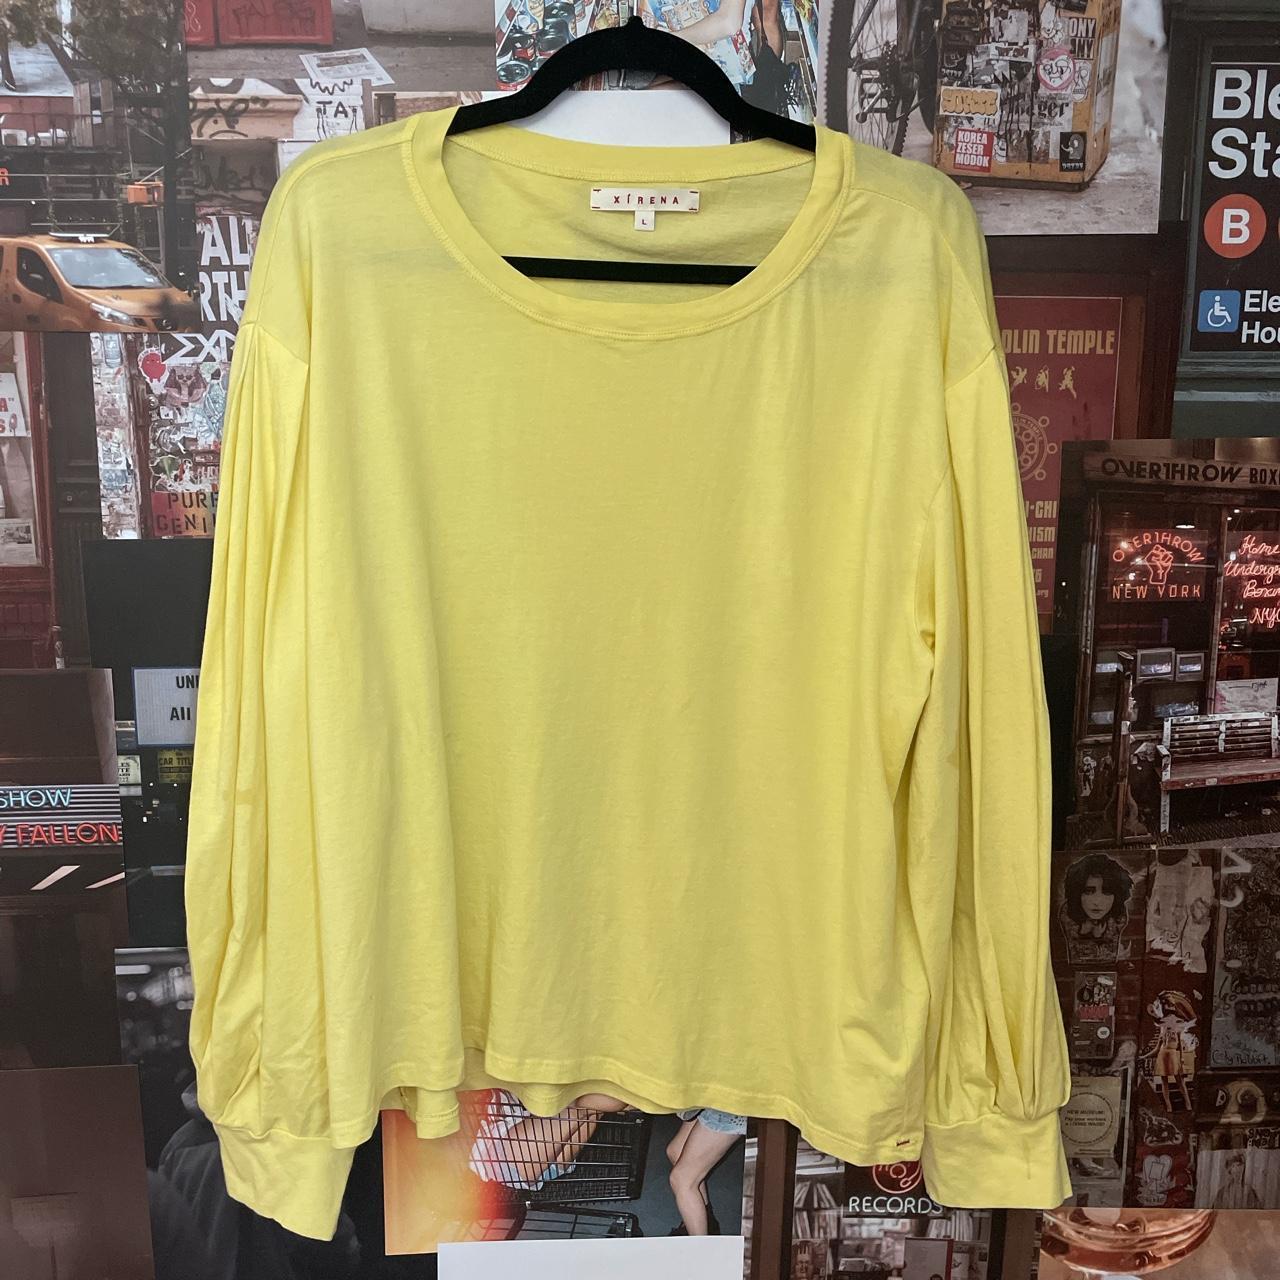 XIRENA Women's Yellow Shirt